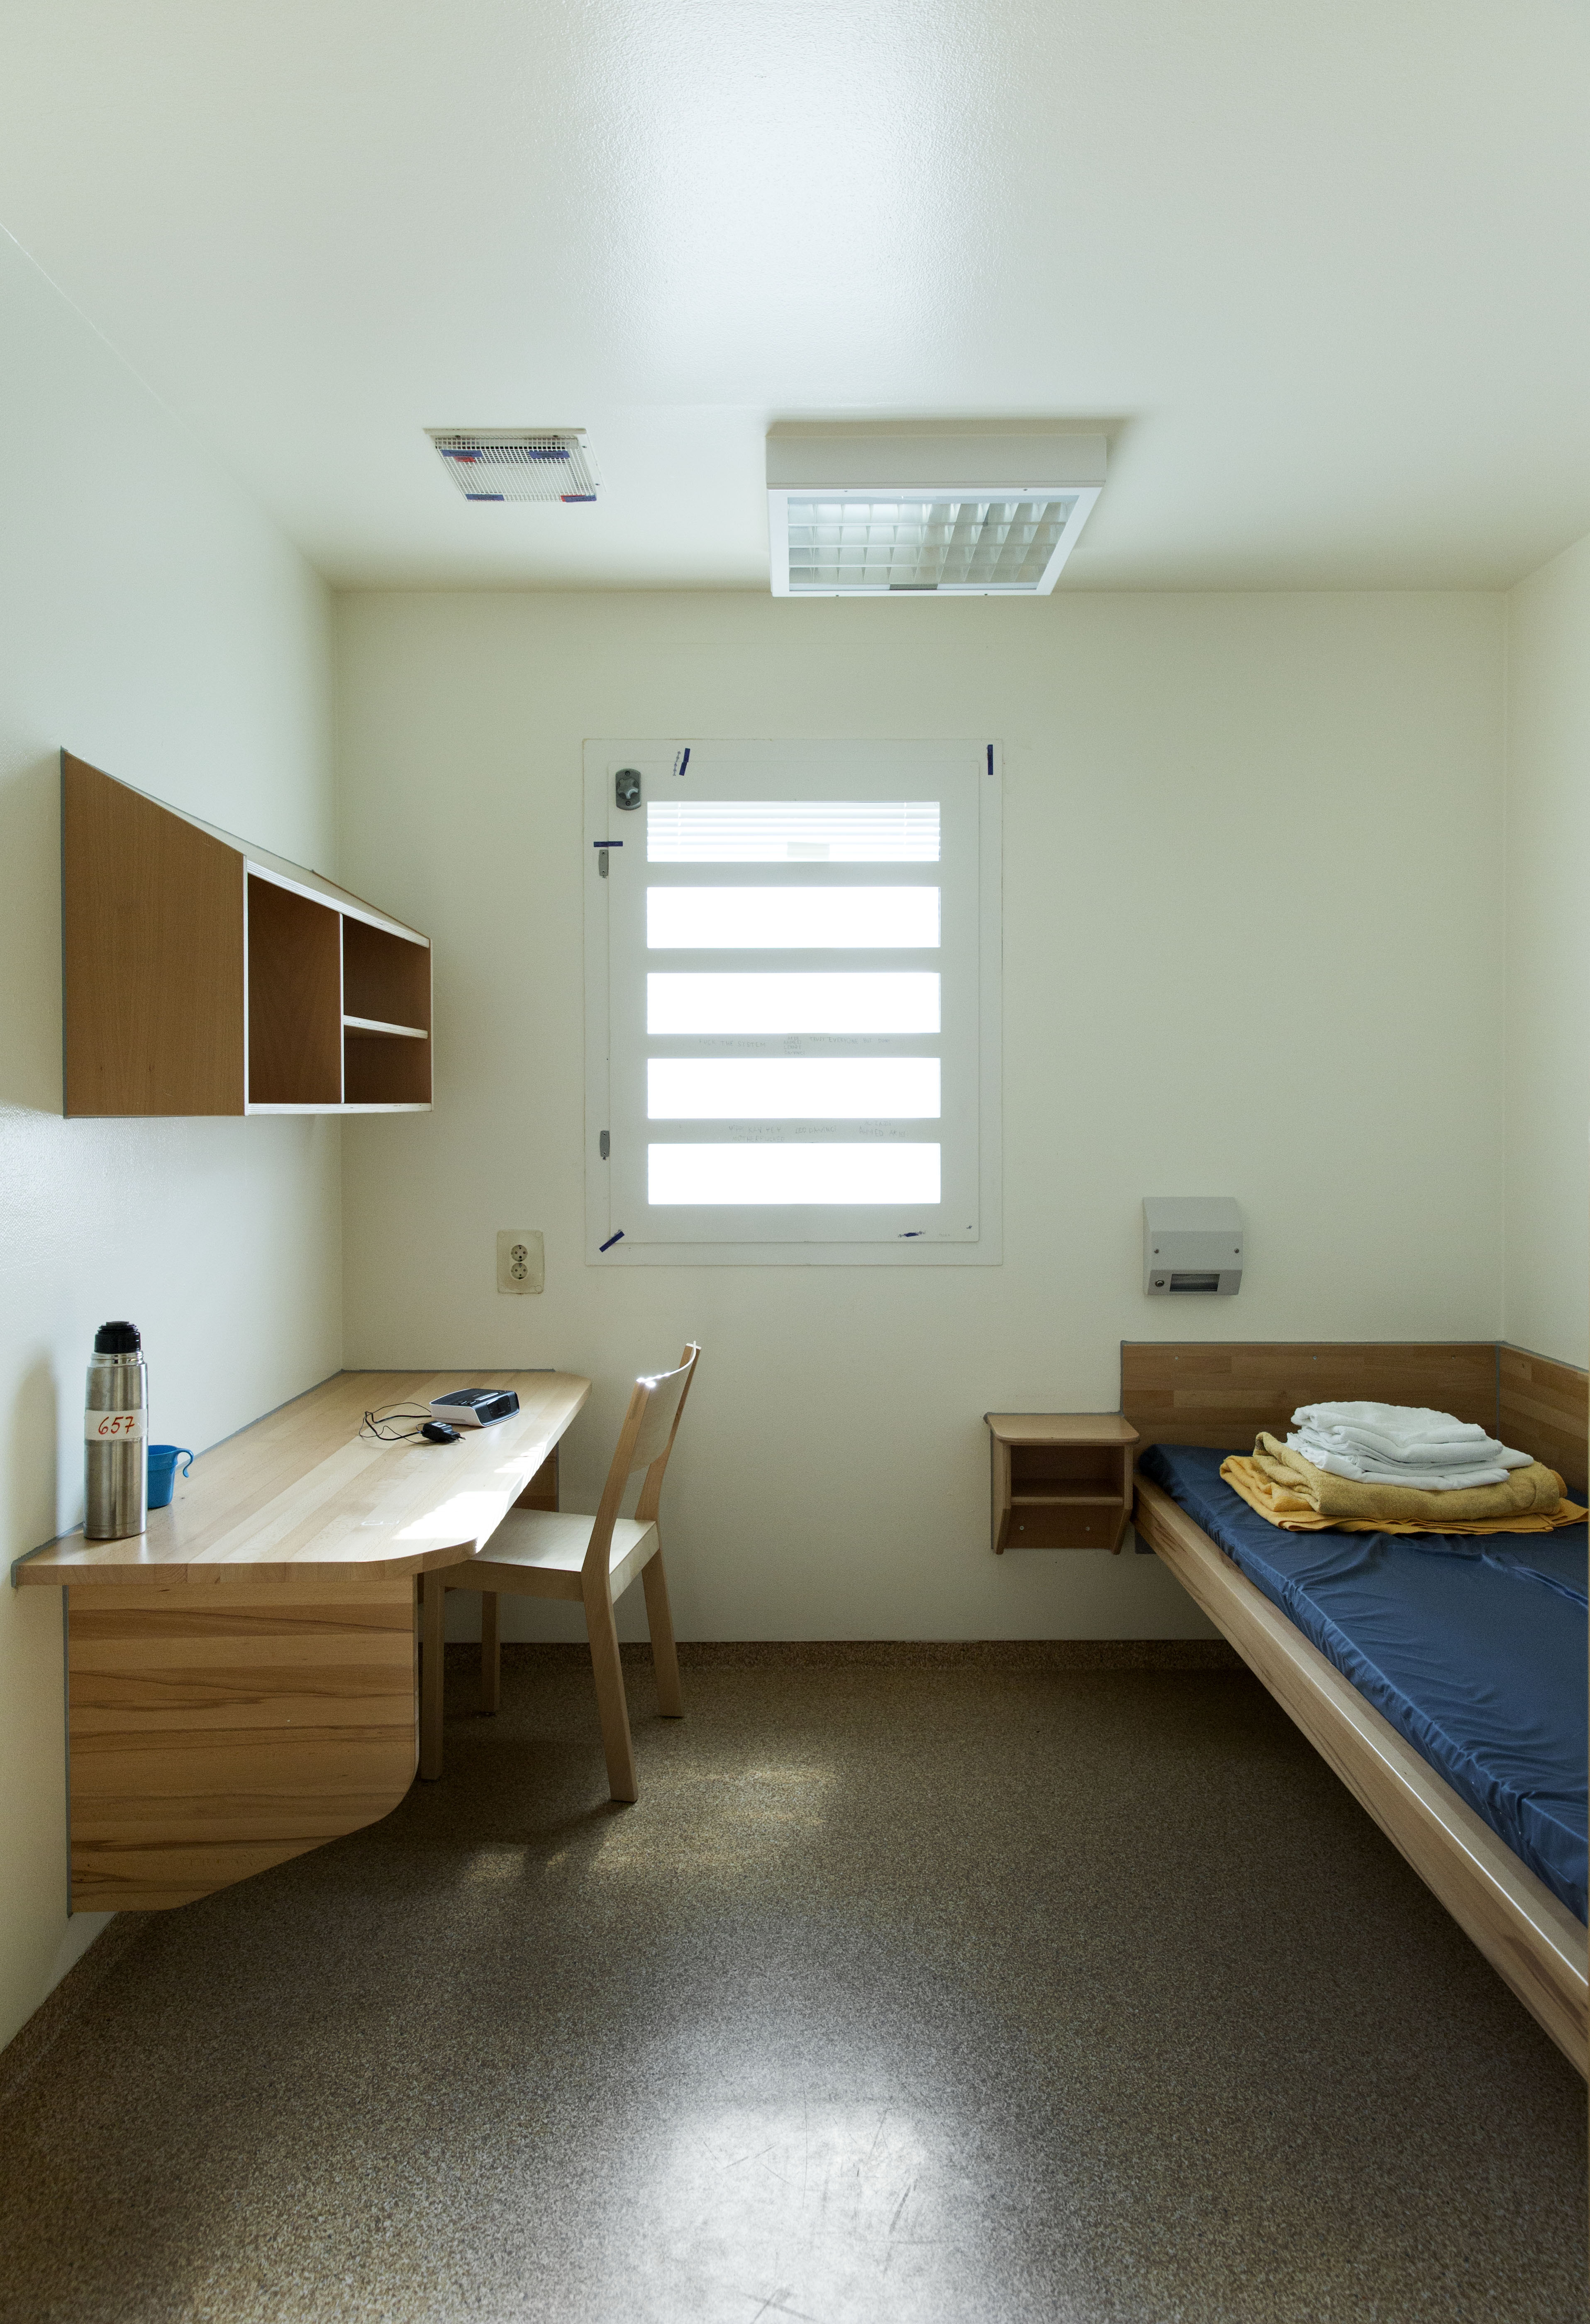 Ett exempel på en cell i på ett svenskt häkte. Detta rummet finns i Malmö.